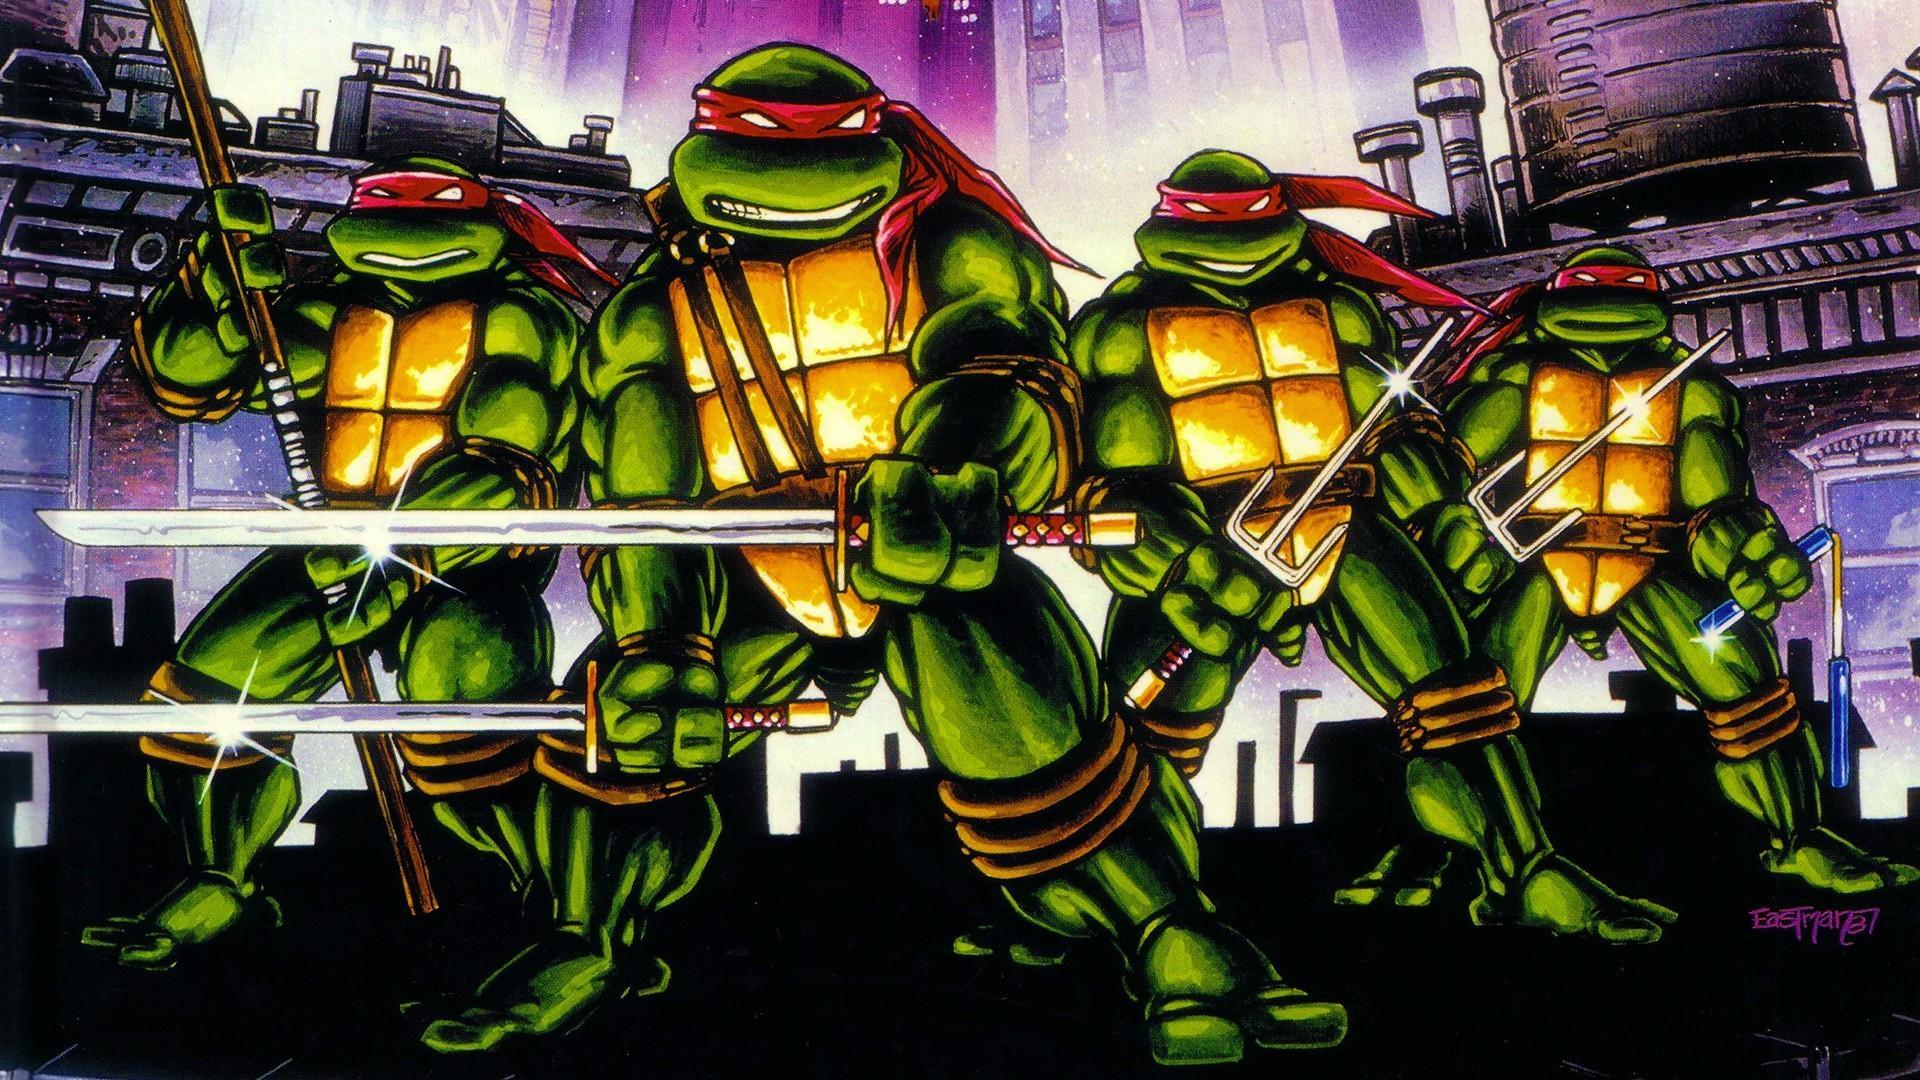 patroon nicht vleugel Onze grote liefde voor de Teenage Mutant Ninja Turtles